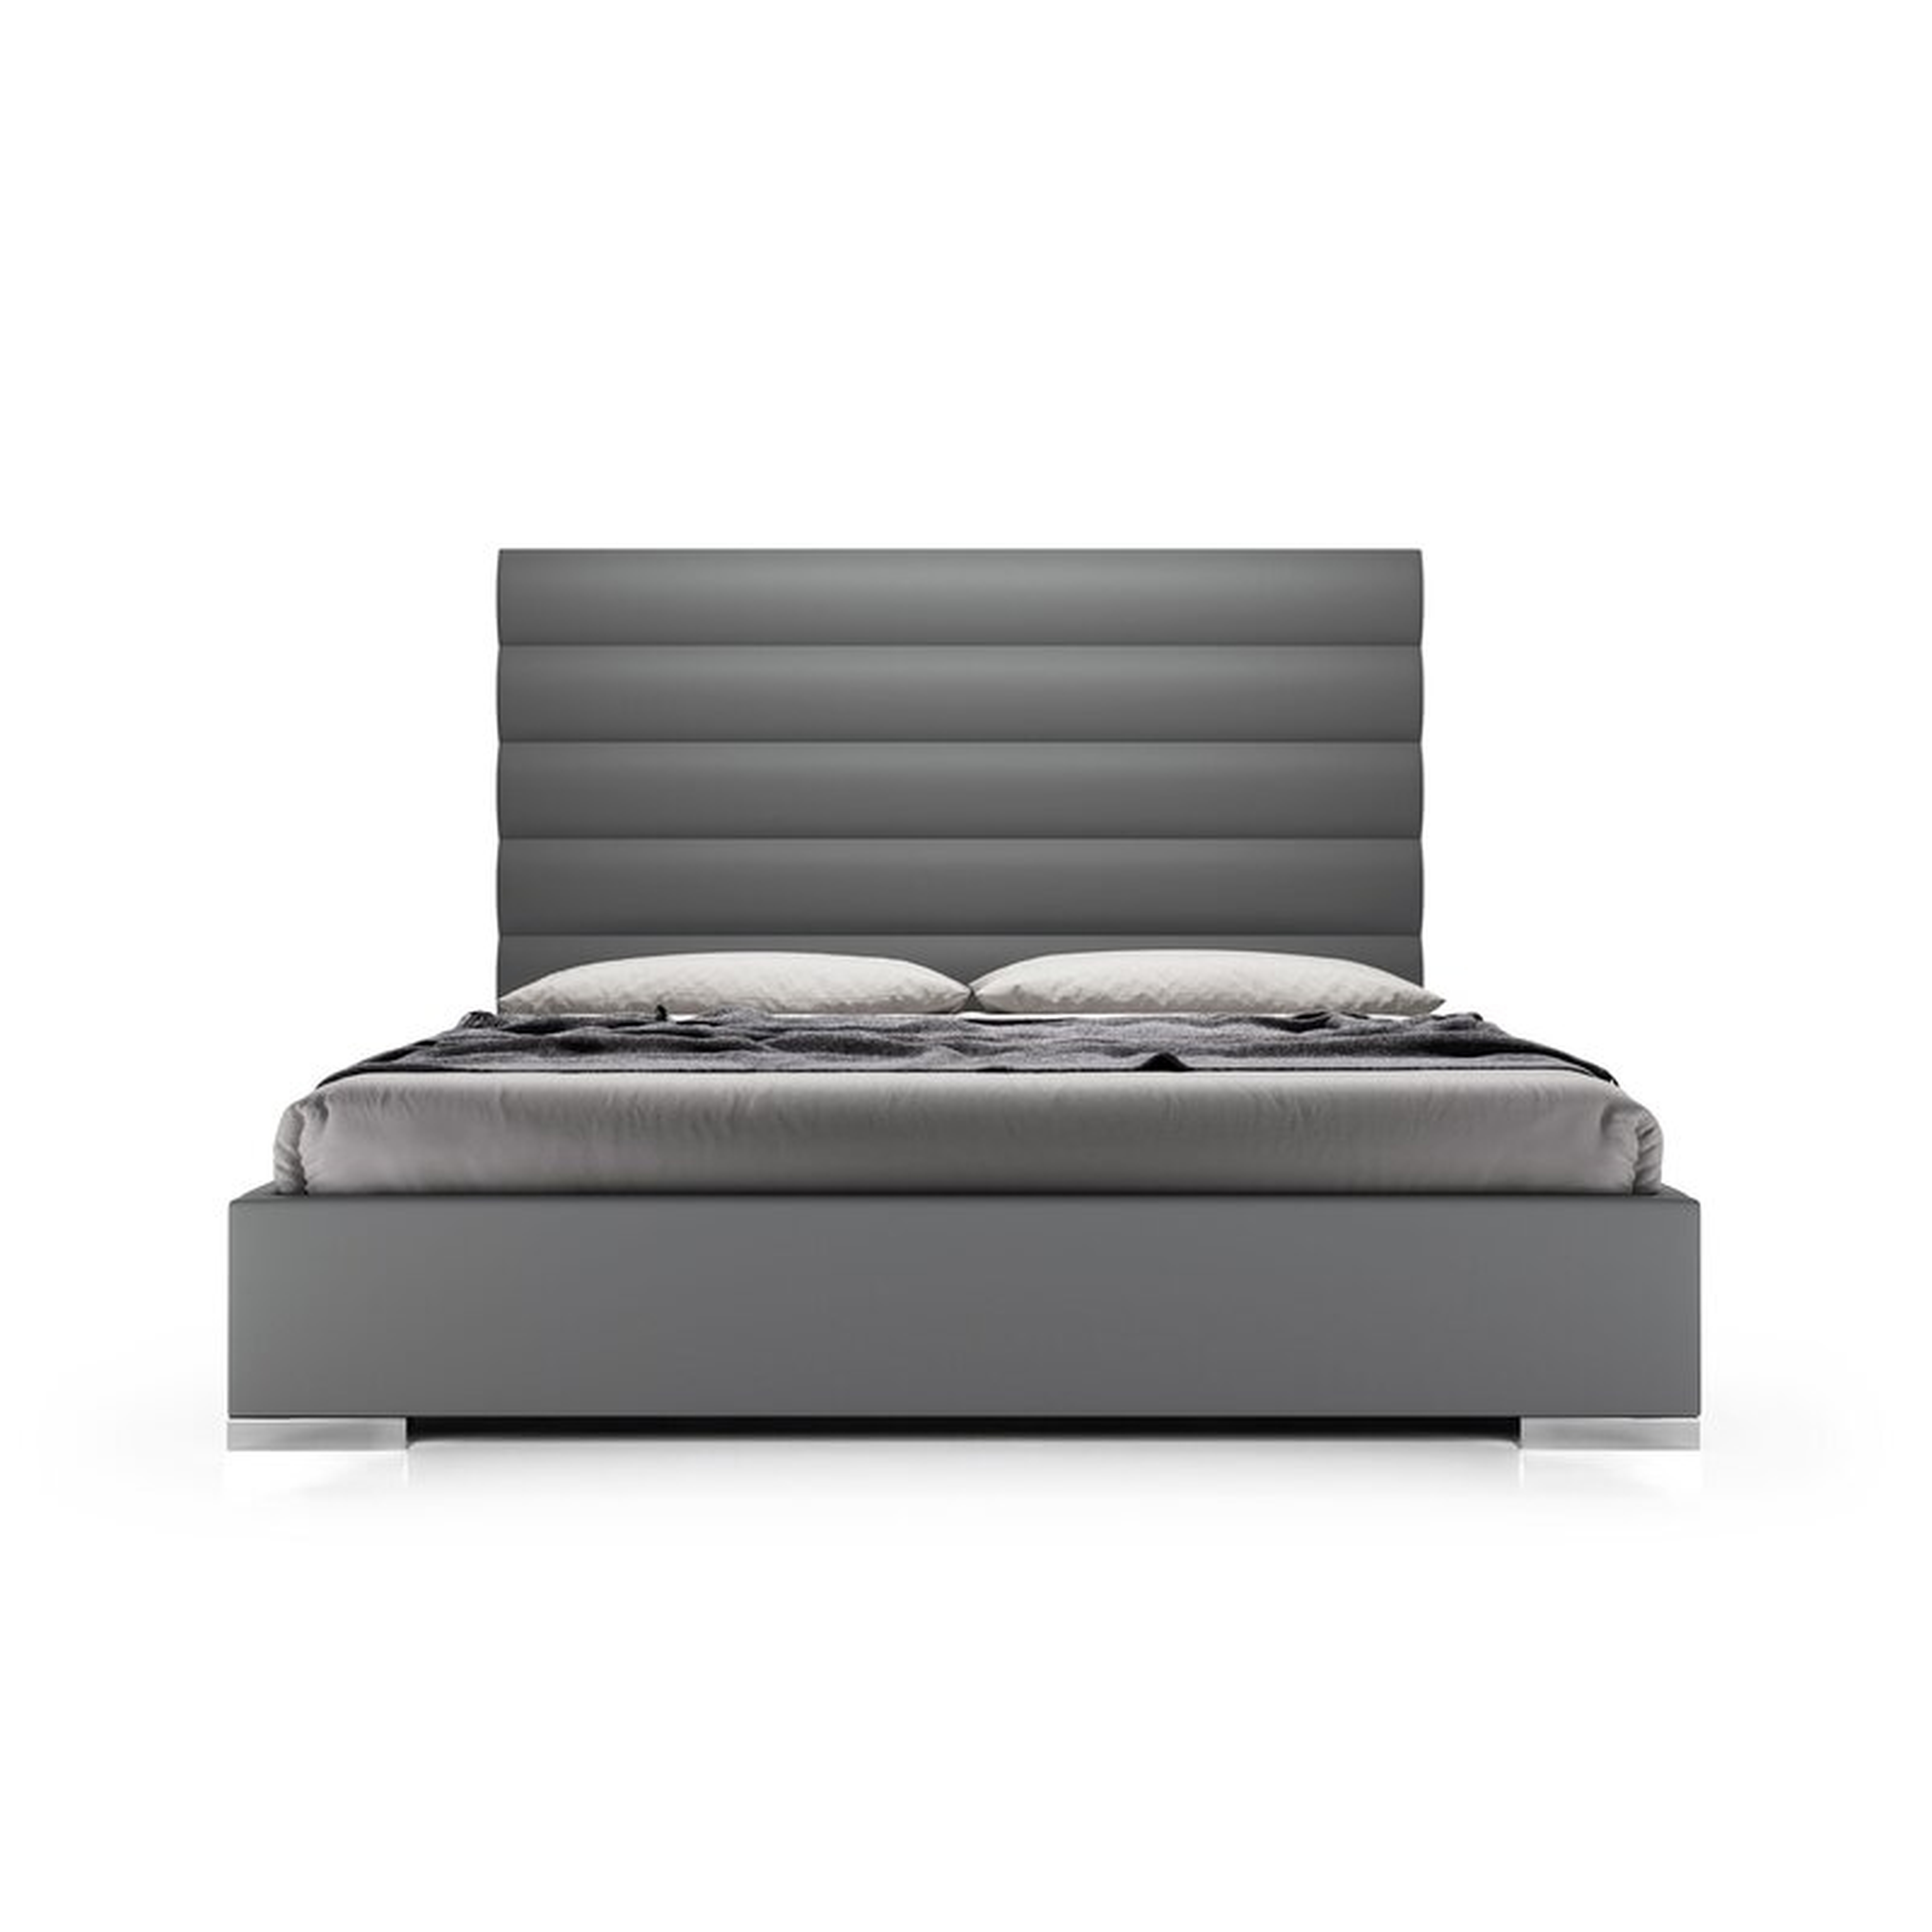 Modloft- Instinct Tufted Upholstered Low Profile Platform Bed - Perigold